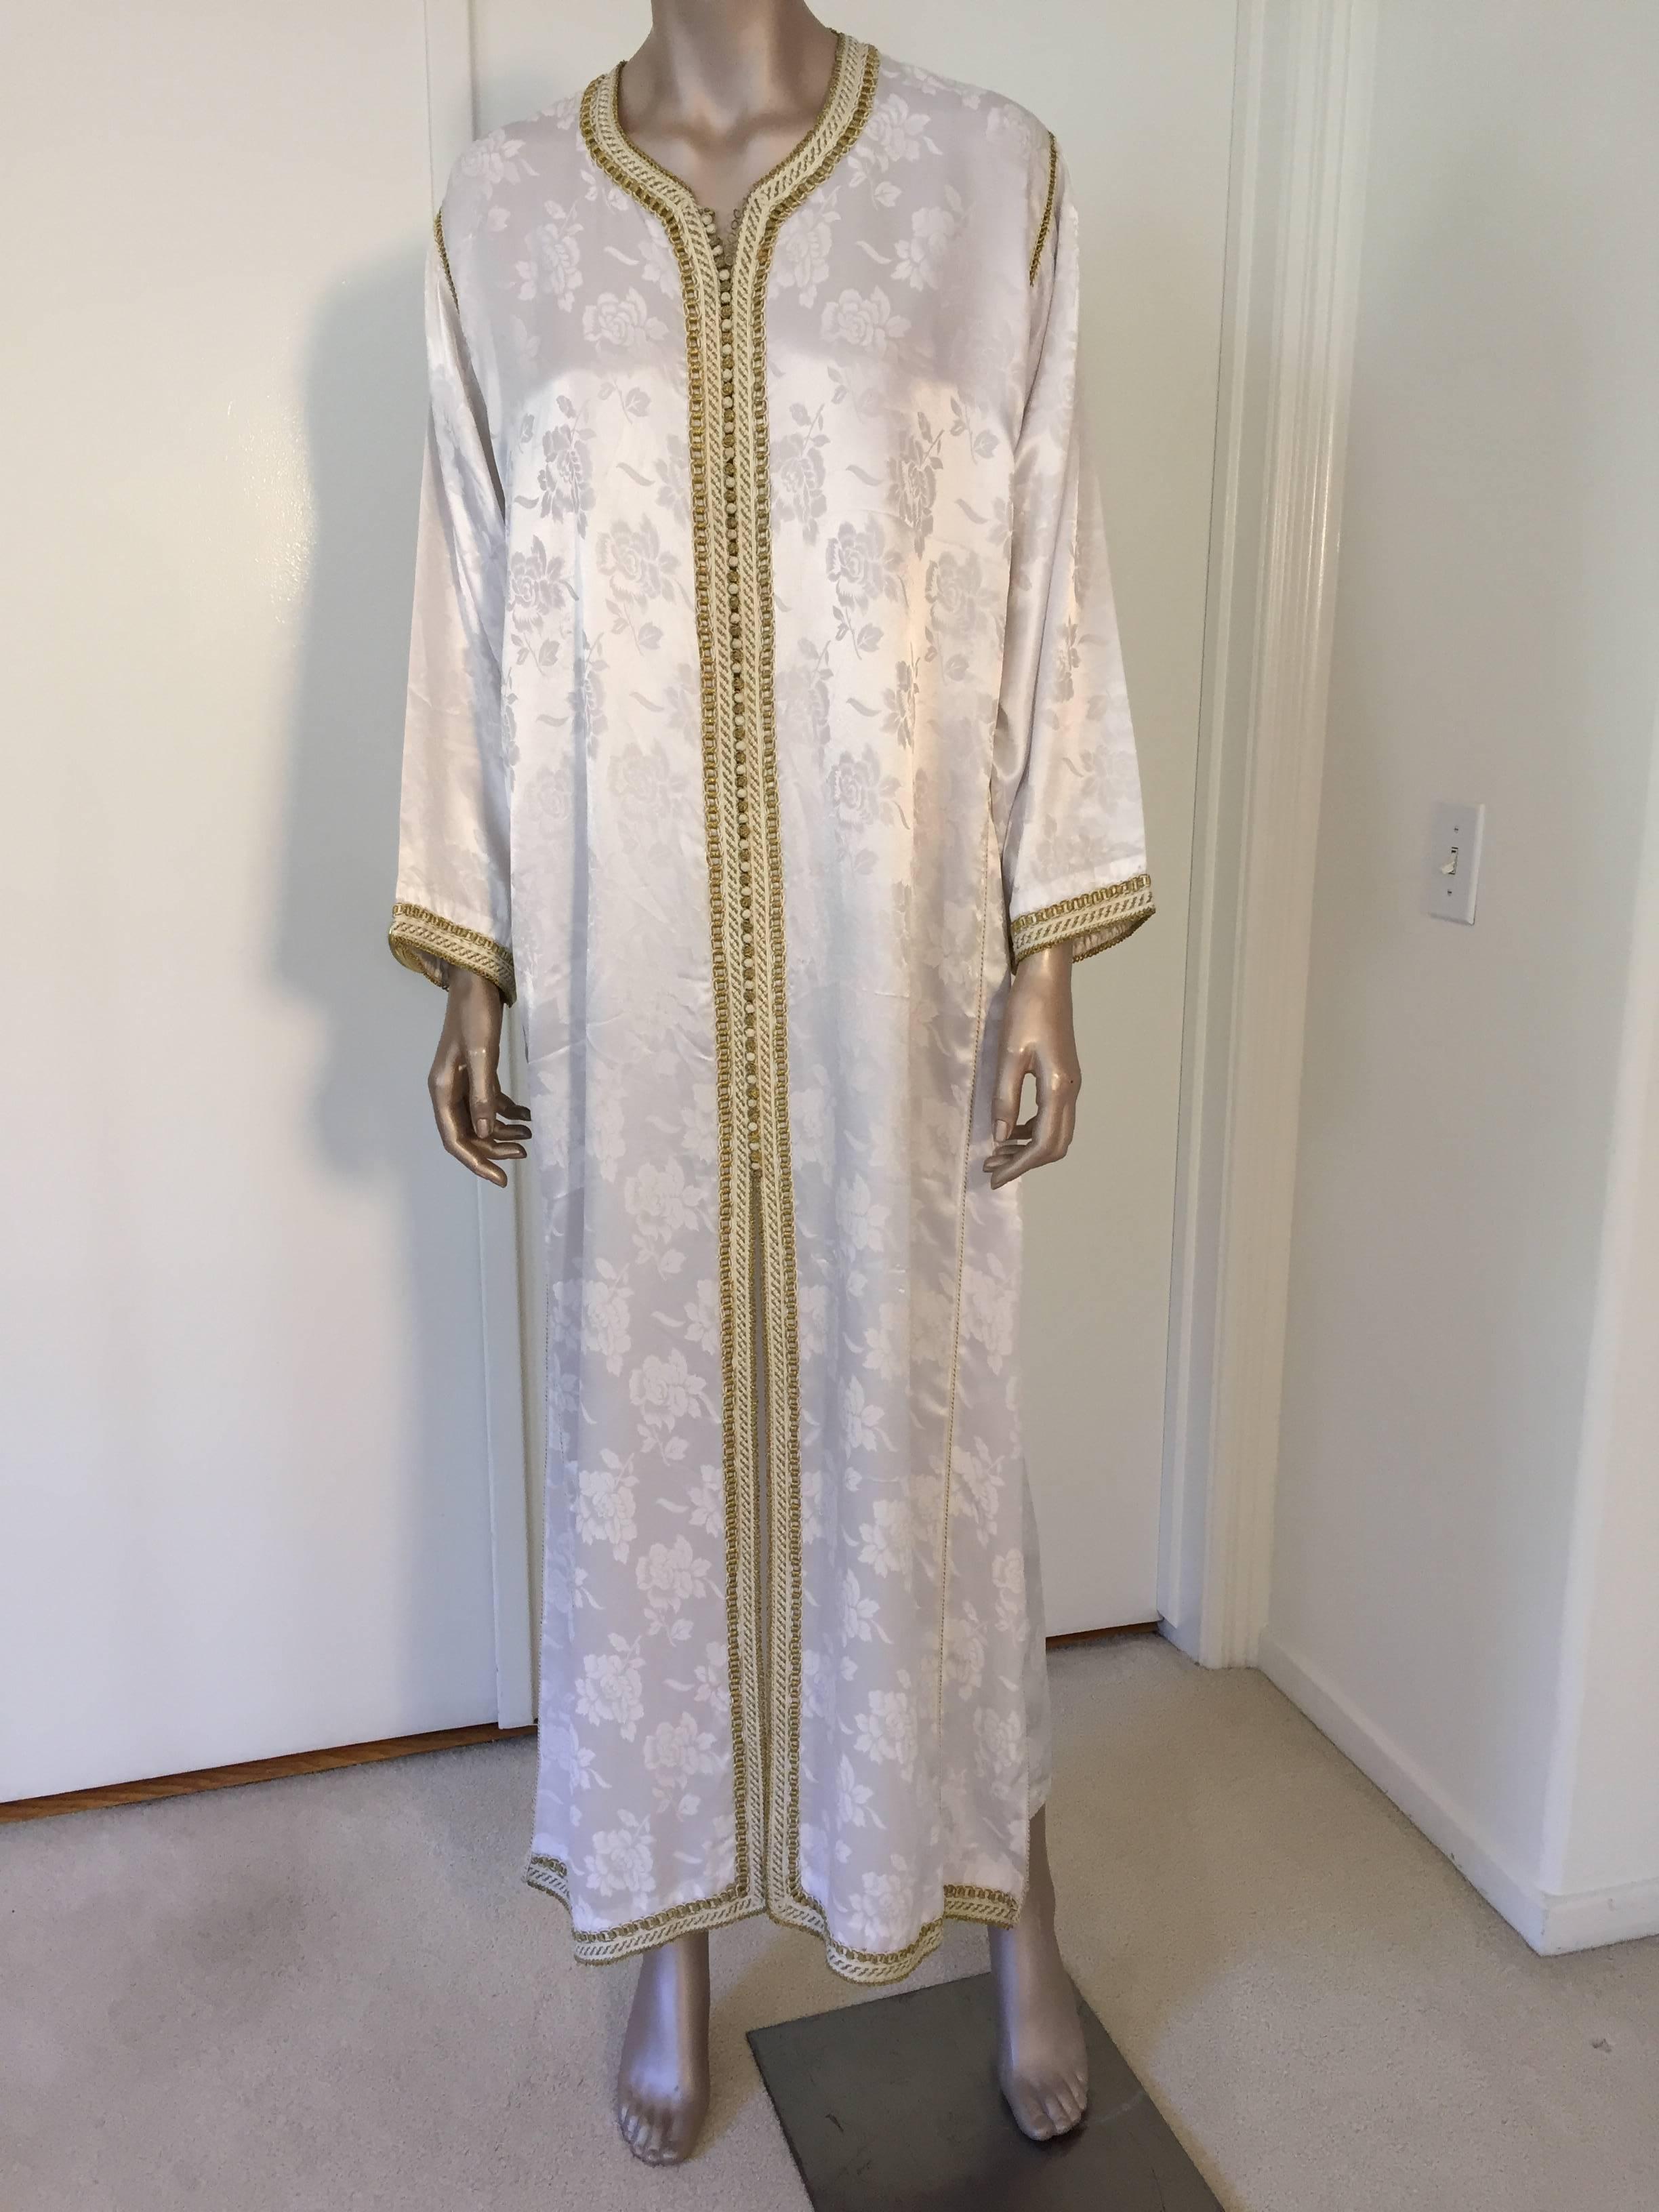 Elegantes marokkanisches Kaftan-Kleid mit weißer Stickerei und Goldverzierung, um 1970. Dieser Kaftan im langen Maxikleid ist vollständig von Hand bestickt und verziert. Einzigartiges marokkanisches Abendkleid aus dem Nahen Osten.
Der Kaftan hat